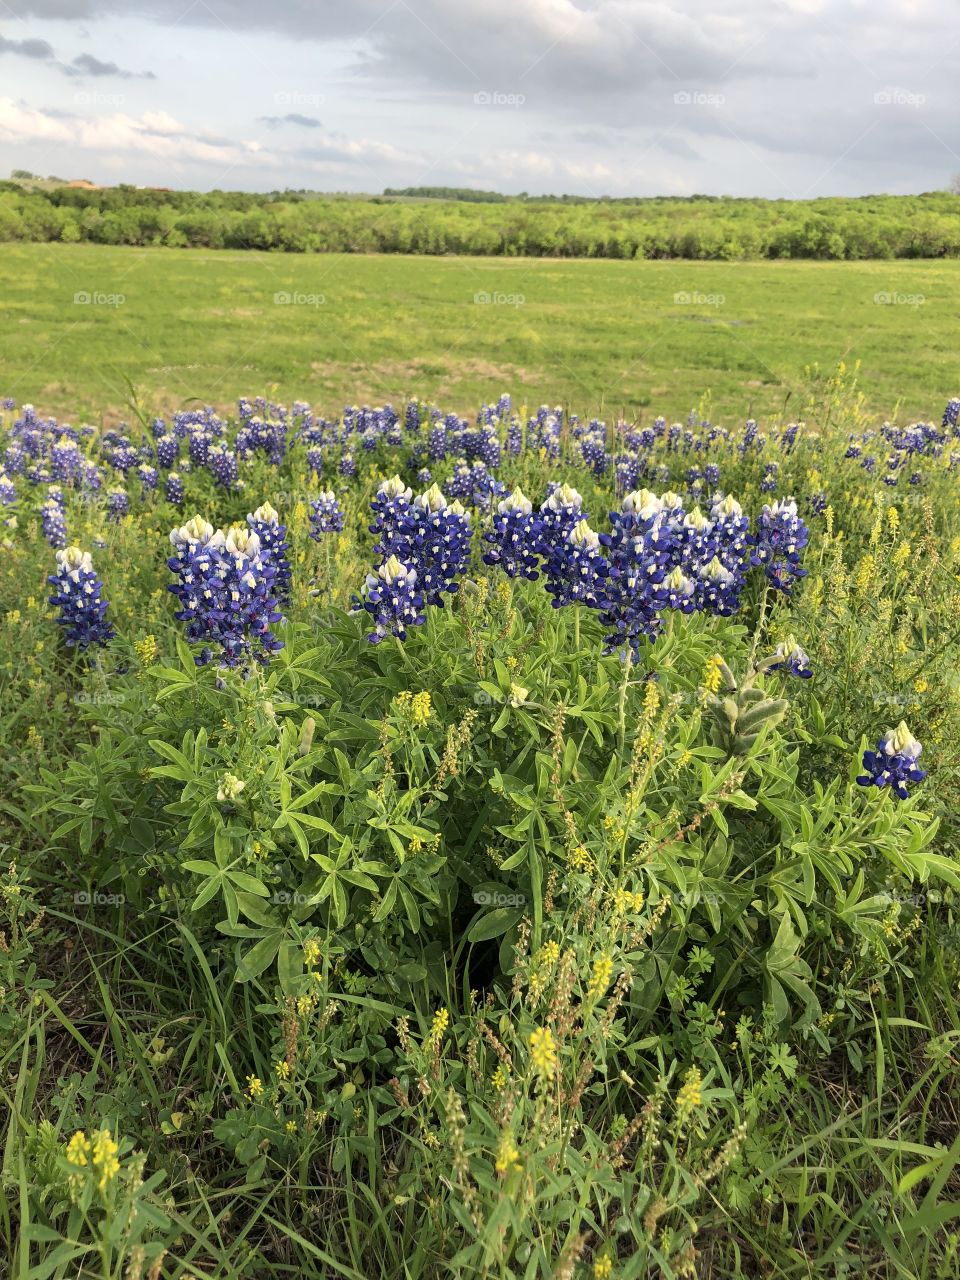 Bluebonnets In a Texas field 